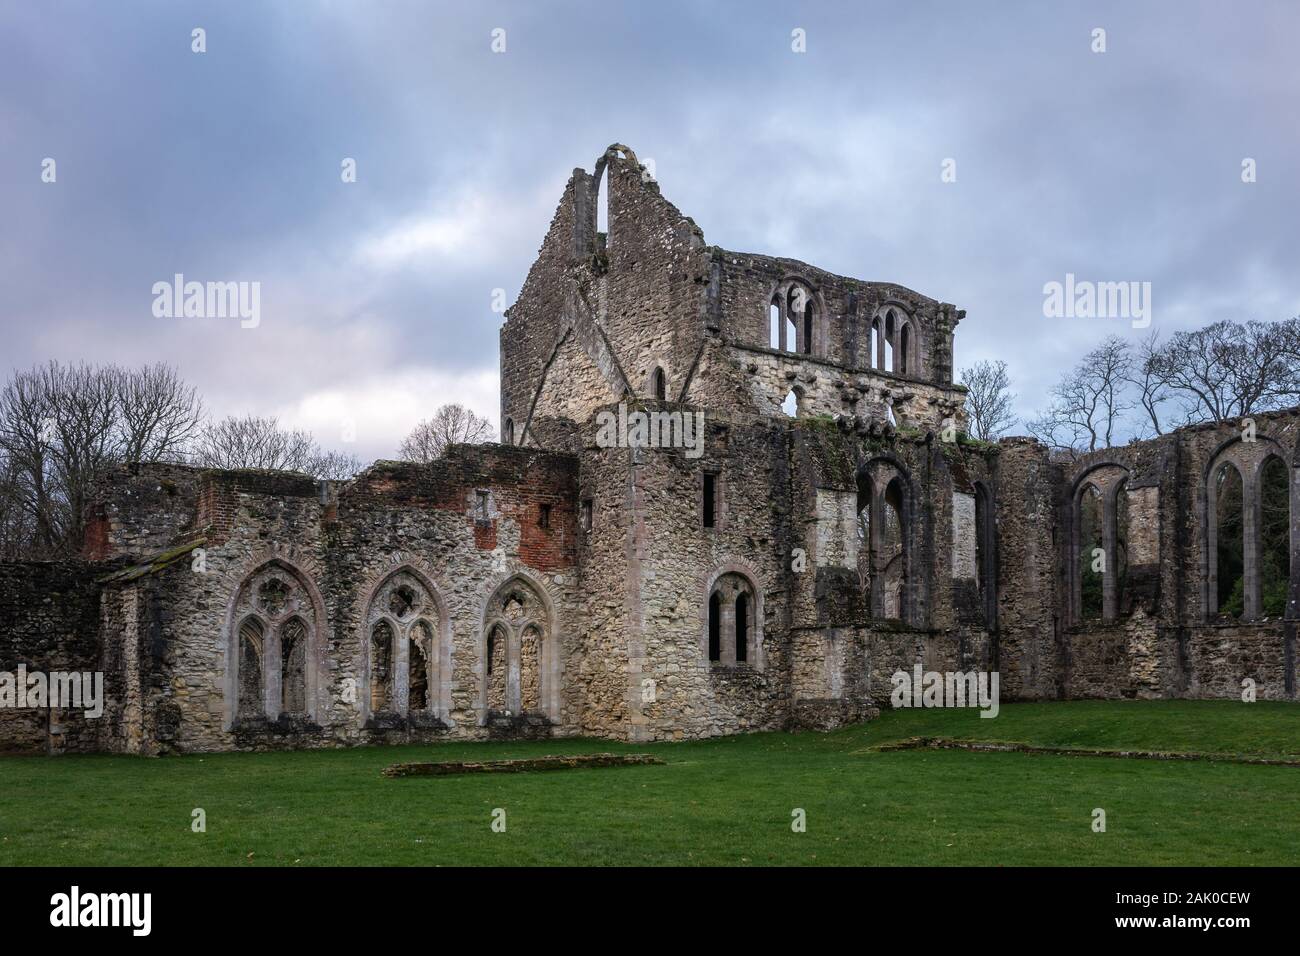 Southampton, Netley, UK. Januar 2020. Die Ruinen von netley Abtei Kloster in der Nähe von Southampton, ein englischer Weltkulturerbe in Hampshire, England Stockfoto